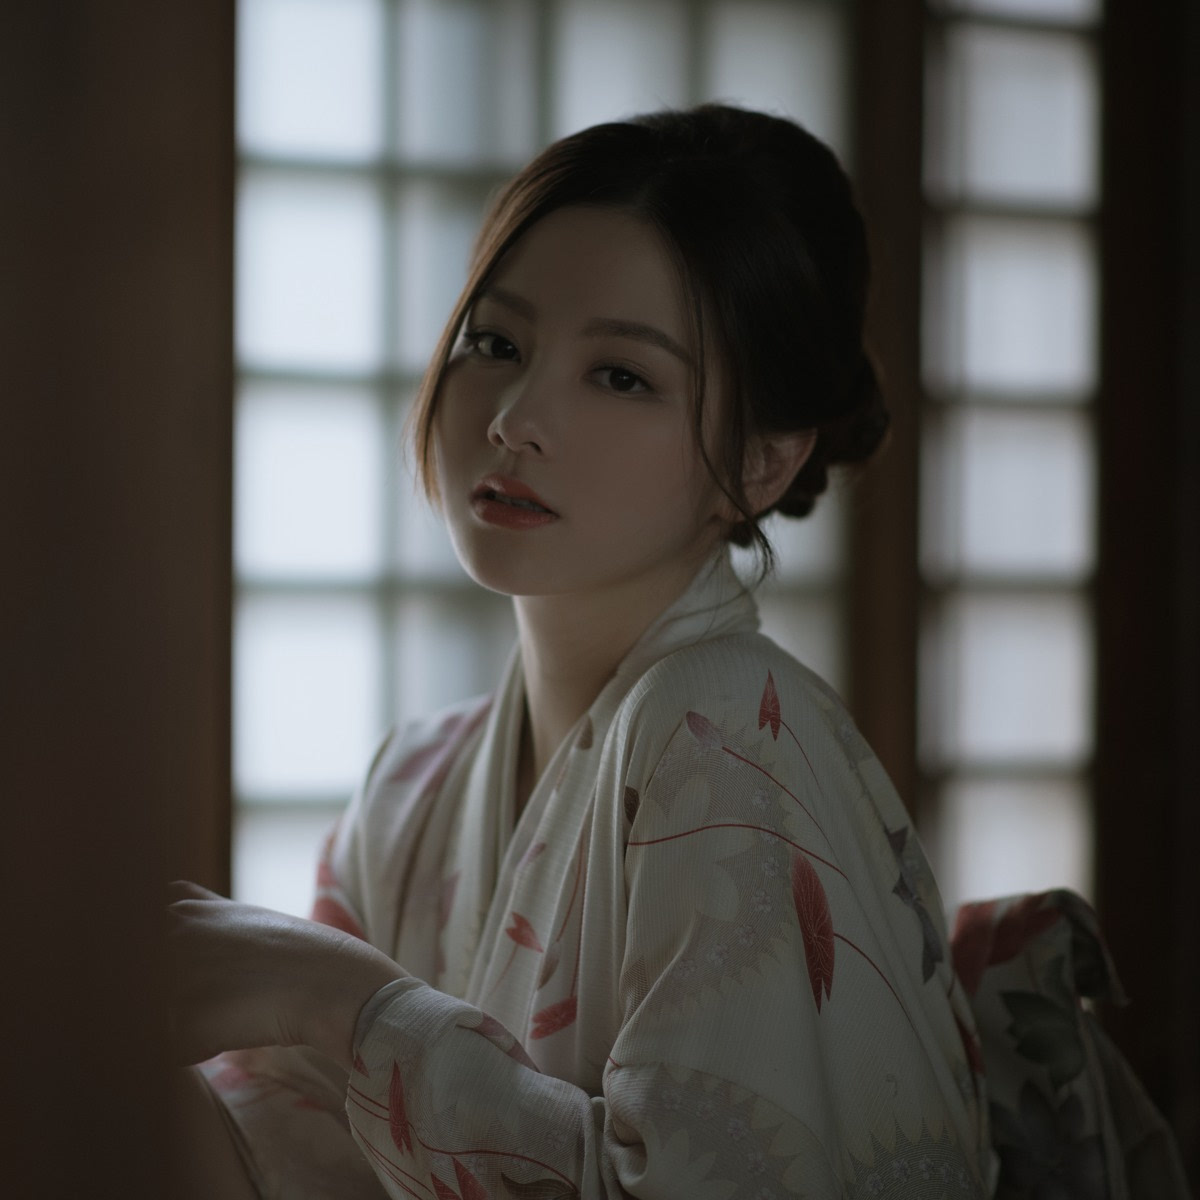 传统极品日本和服美女高清写真-搜狐